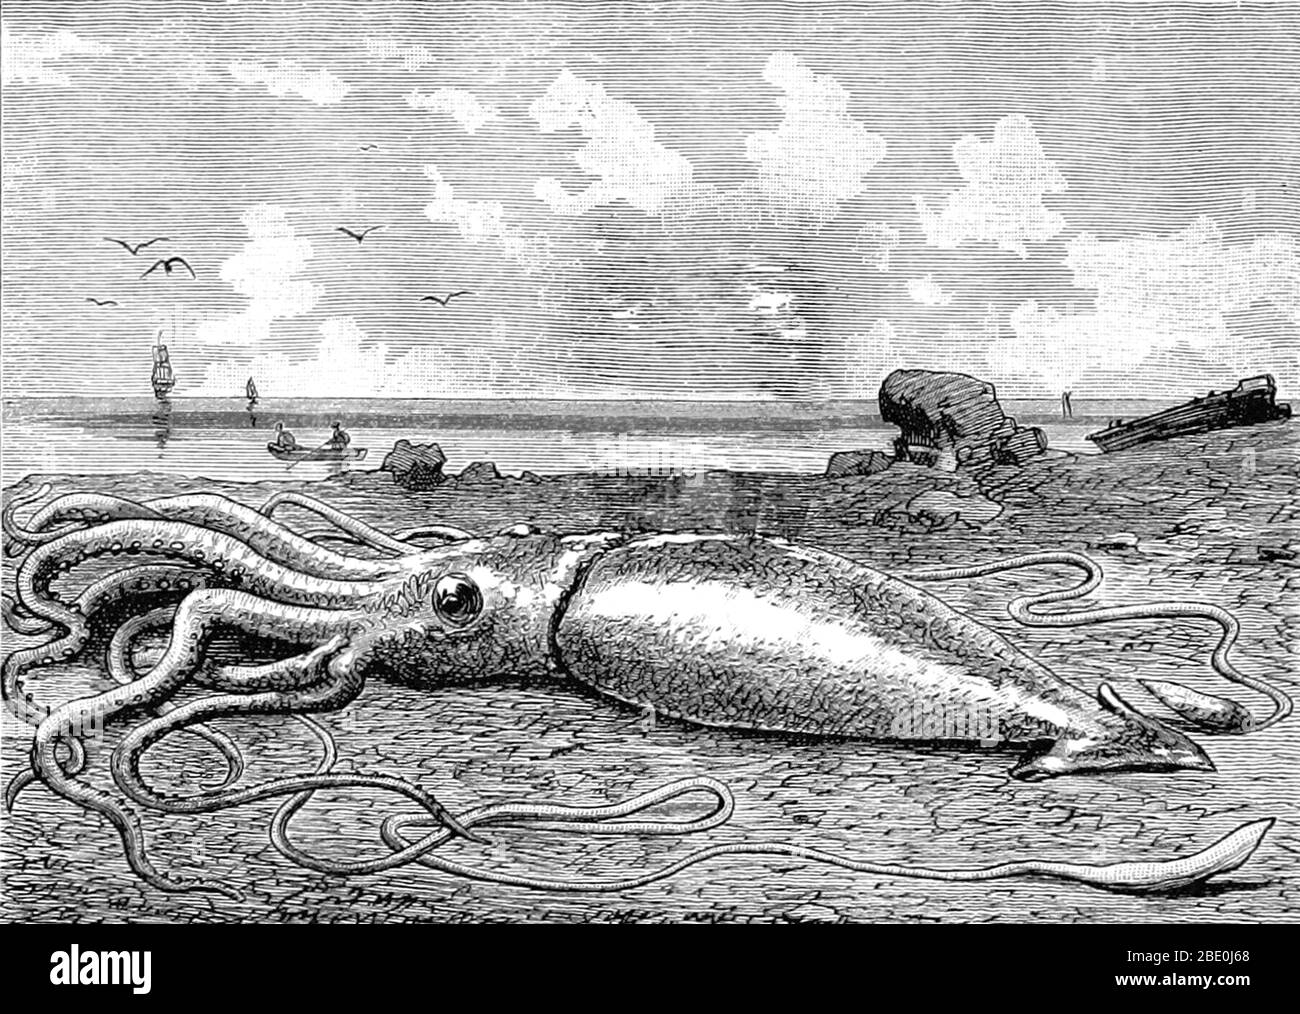 Le squid géant (genre Architeeuthis) est un squid de logement en haute mer de la famille des Architeeuthidae. Le calmar géant peut atteindre une taille énorme en raison du gigantisme en haute mer: Les récentes estimations mettent la taille maximale à 43 pieds pour les femelles et 33 pieds pour les mâles des nageoires postérieures à la pointe des deux tentacules longs. Le manteau mesure environ 6,6 pieds de long (plus pour les femelles, moins pour les mâles) et la longueur du calmar, à l'exclusion de ses tentacules (mais y compris la tête et les bras) dépasse rarement 16 pieds. Les allégations de spécimens mesurant 66 pieds ou plus n'ont pas été documentées scientifiquement. Des histoires de calmars géants ont Banque D'Images